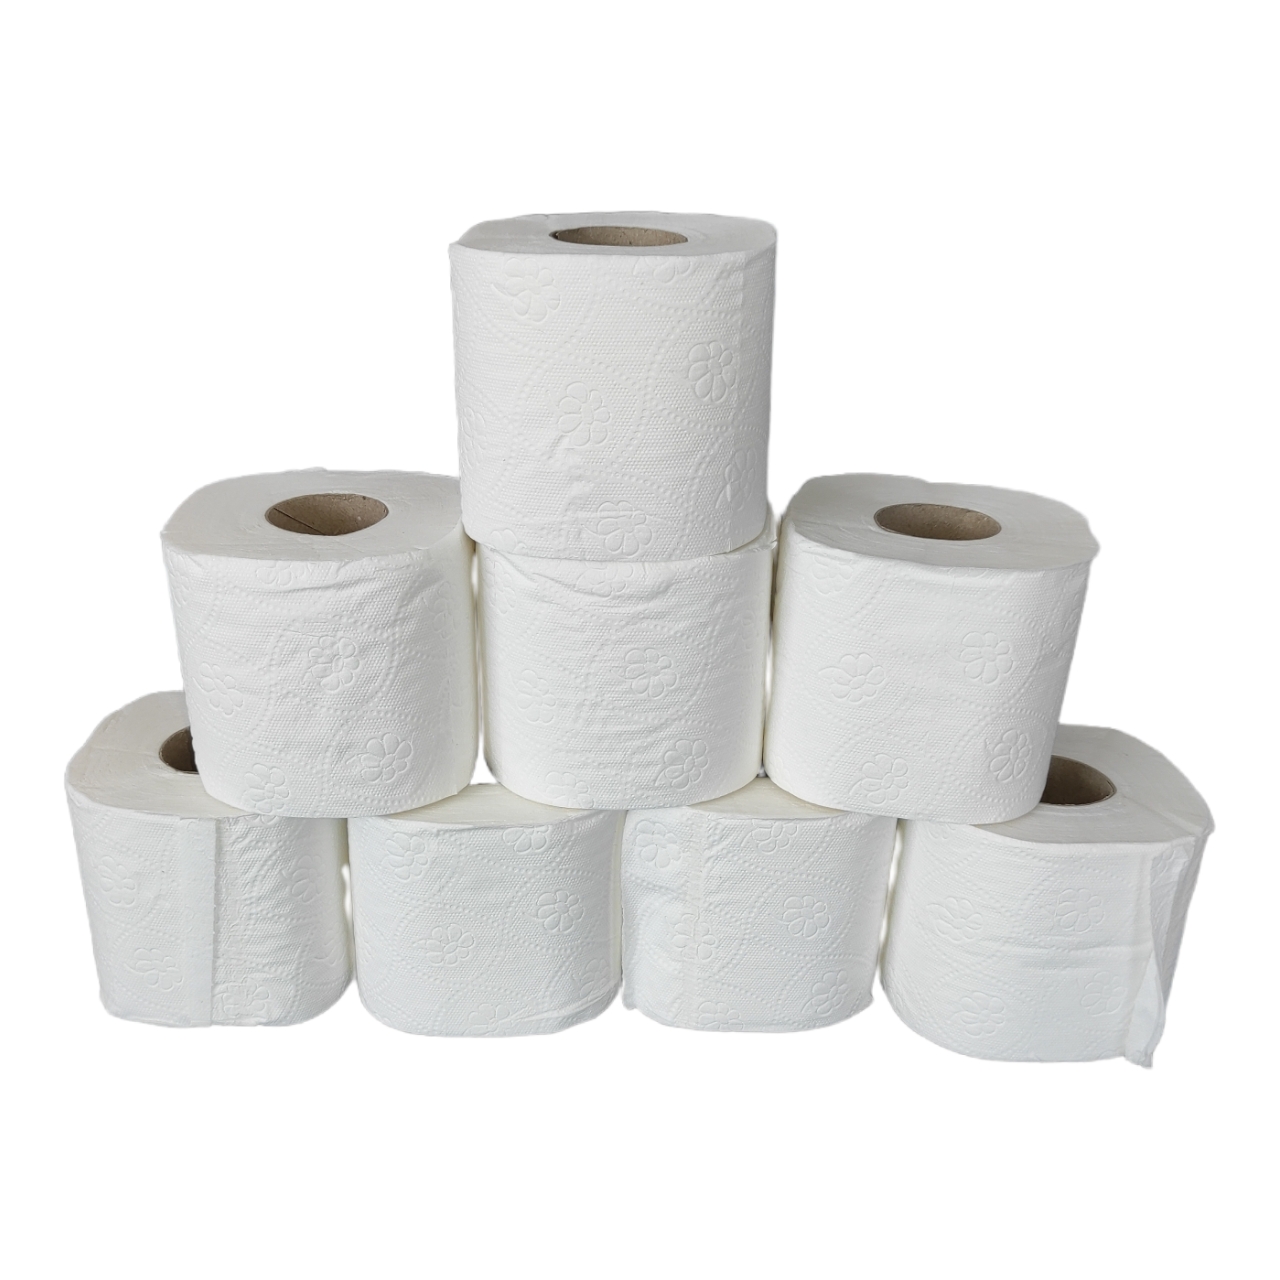 Toilettenpapier - 3-lagig - 8 Rollen (250 Blatt je Rolle)